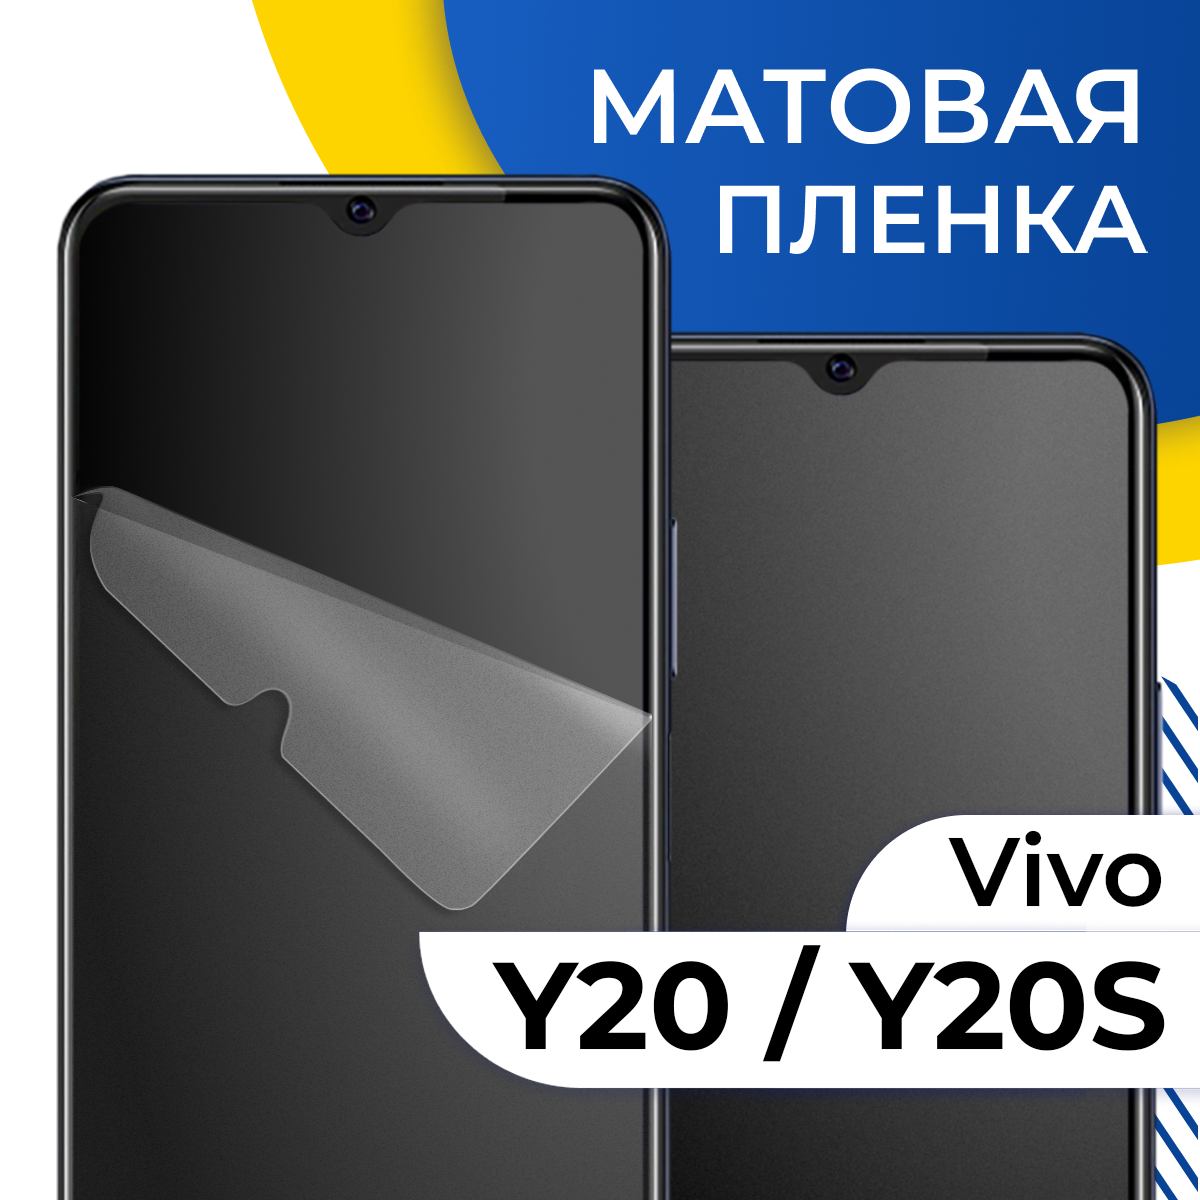 Комплект 2 шт. Матовая гидрогелевая пленка для телефона Vivo Y20 и Y20S / Самовосстанавливающаяся защитная пленка на смартфон Виво У20 и У20С / Противоударная